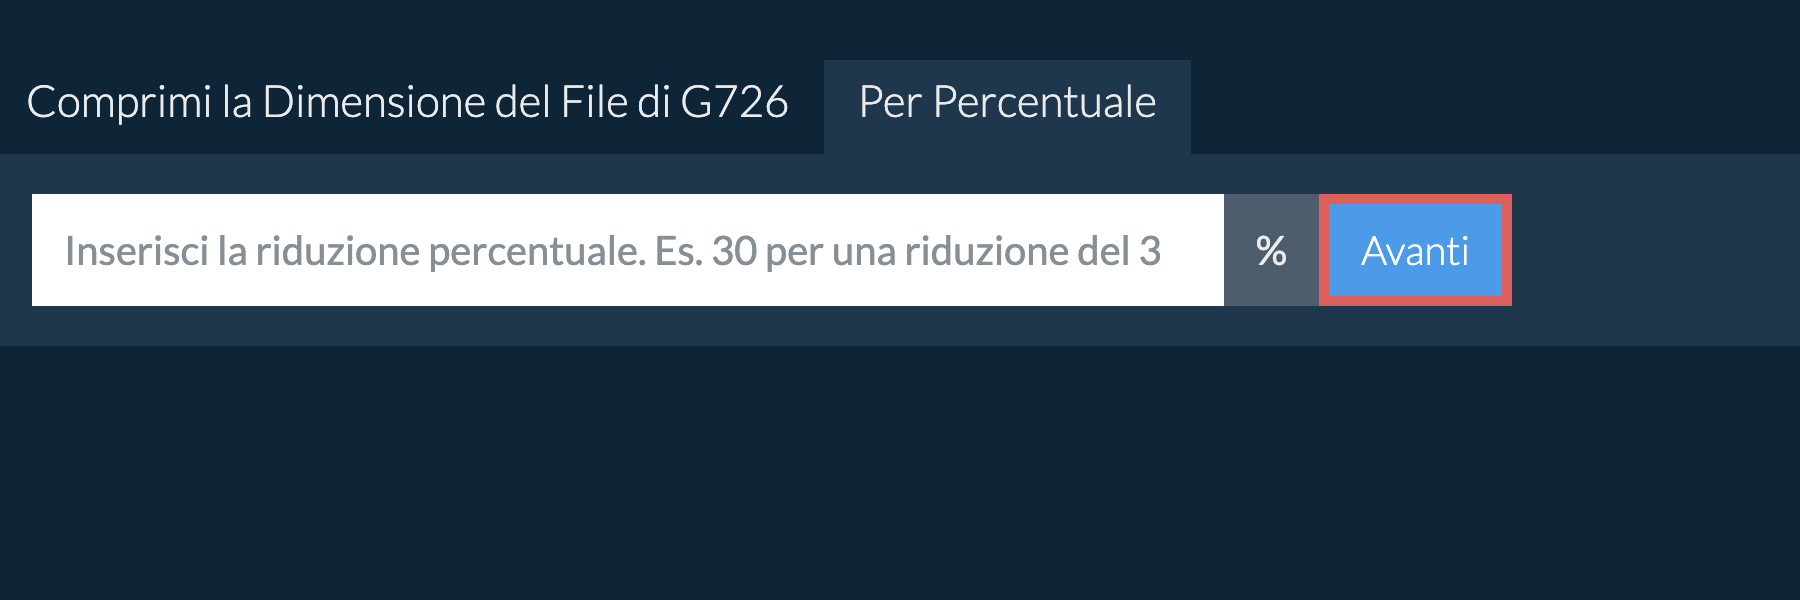 Riduci g726 Per Percentuale